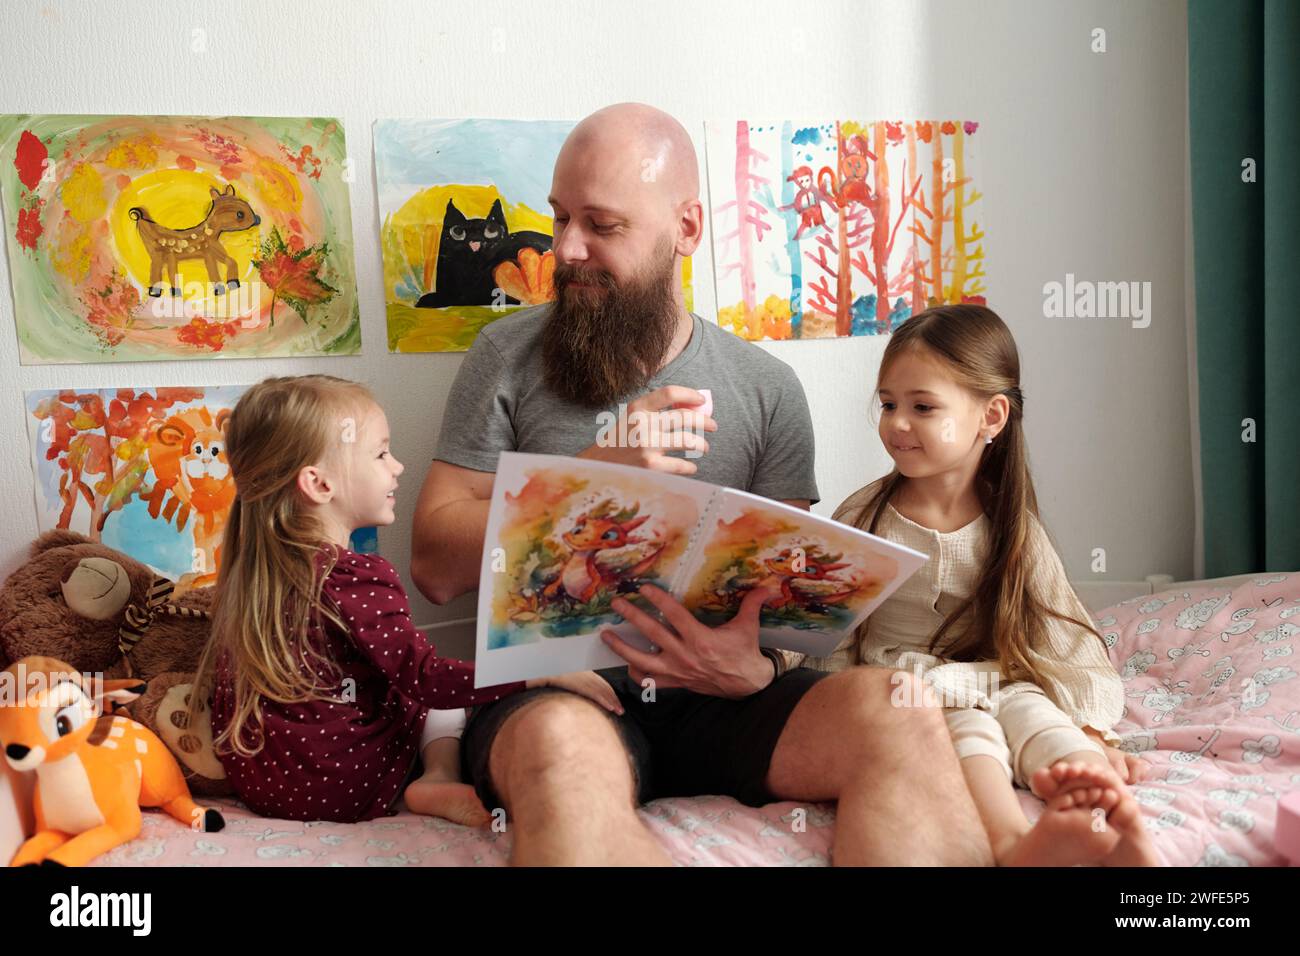 Glücklicher bärtiger Mann mit offenem Buch, der eine seiner süßen kleinen Töchter ansieht, während er zwischen ihnen auf dem Bett sitzt und Comics liest Stockfoto